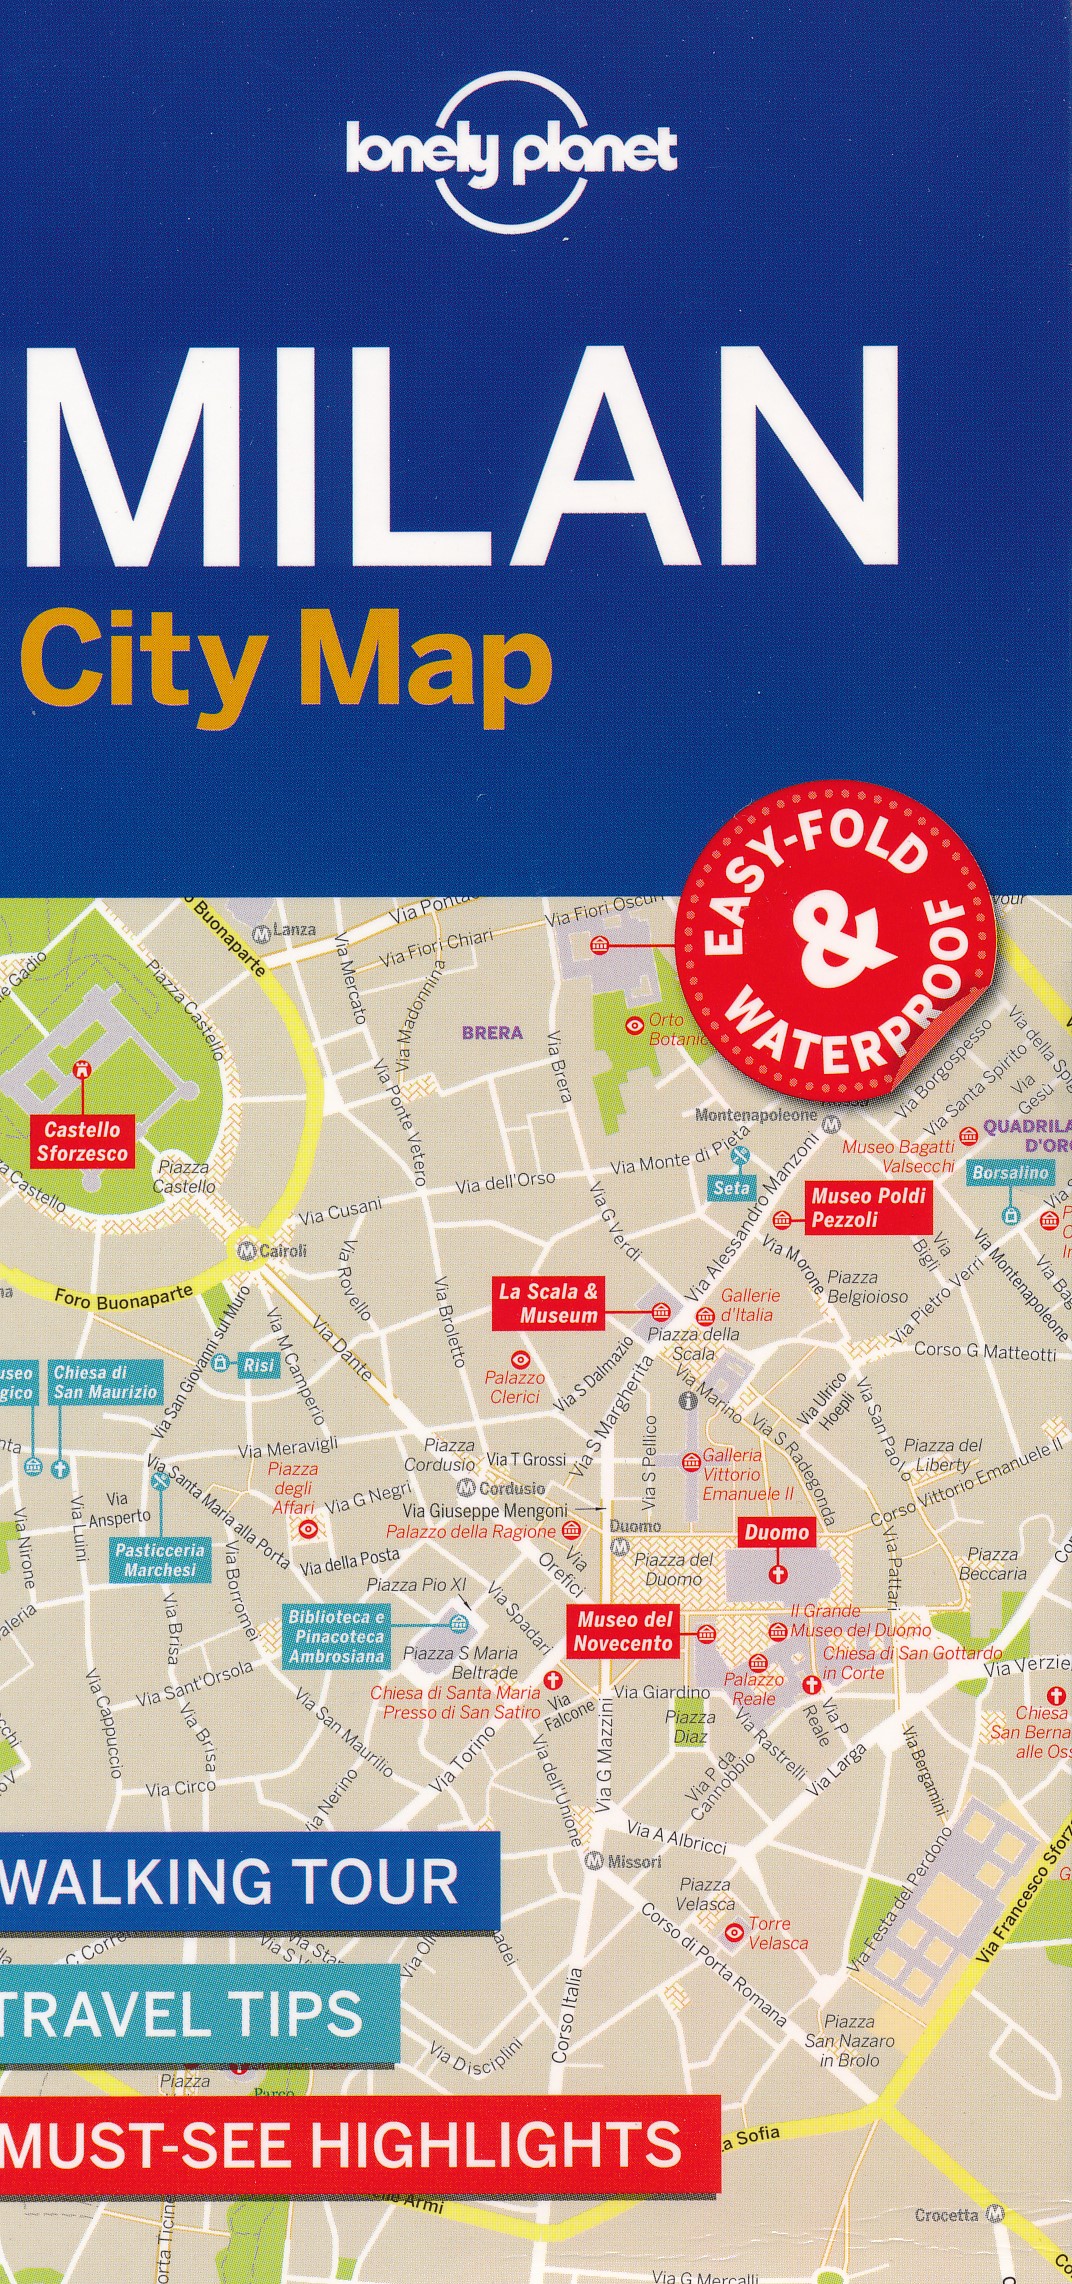 Online bestellen: Stadsplattegrond City map Milan - Milaan | Lonely Planet